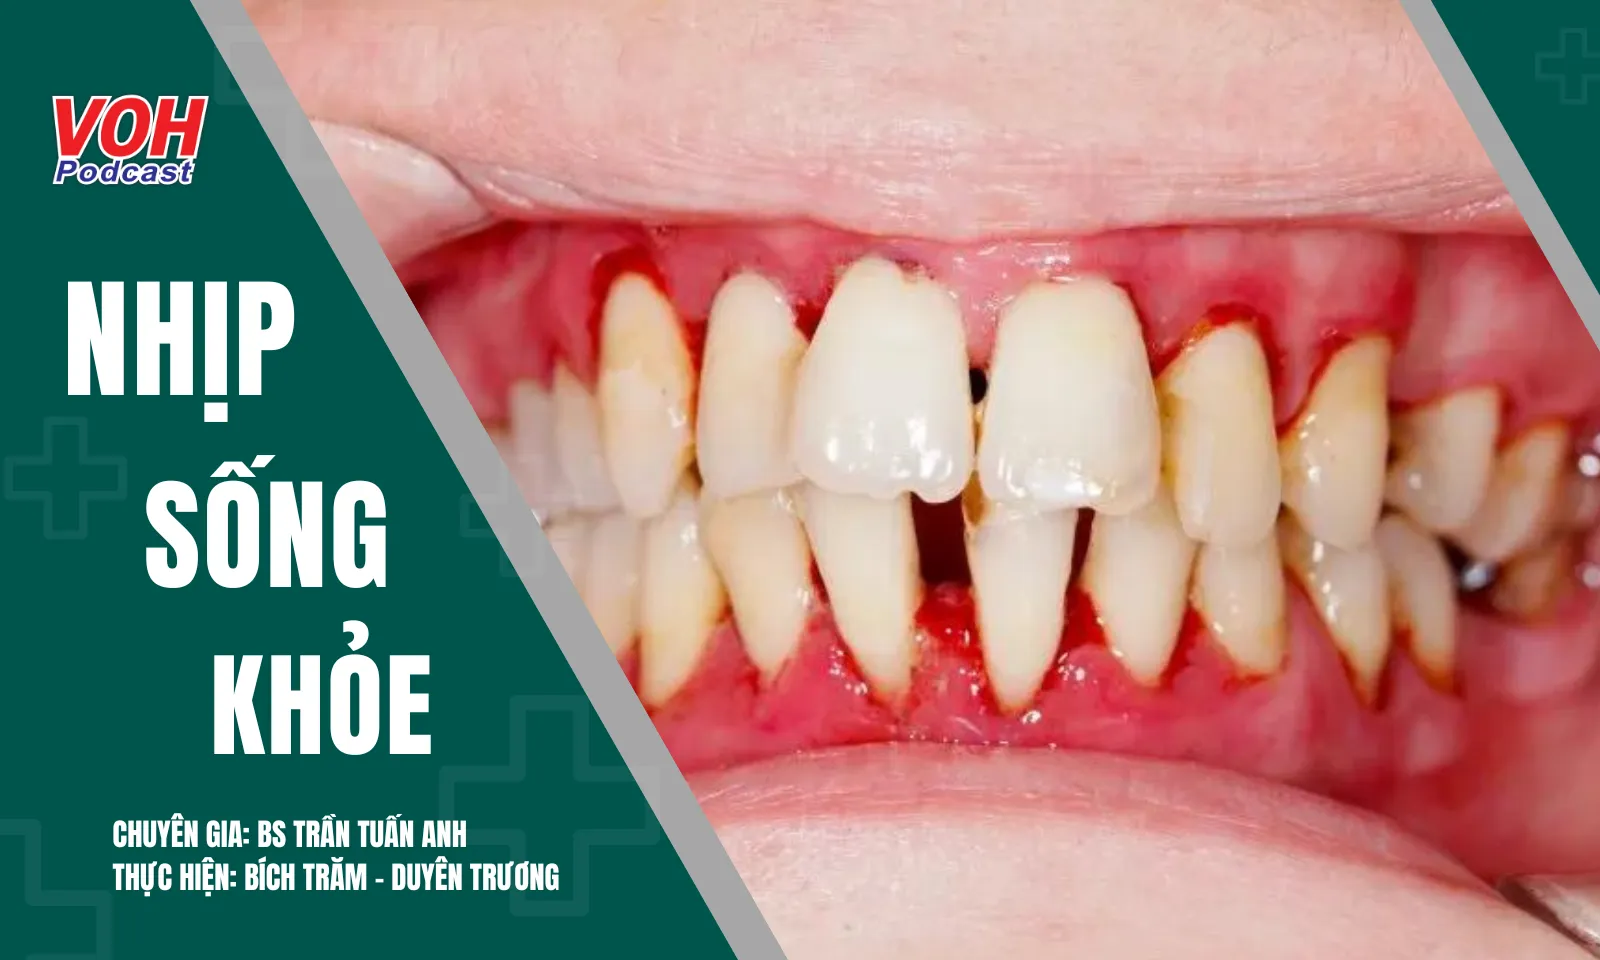 Bệnh nha chu: Mối nguy hiểm lặng lẽ đe dọa sức khỏe răng và nướu